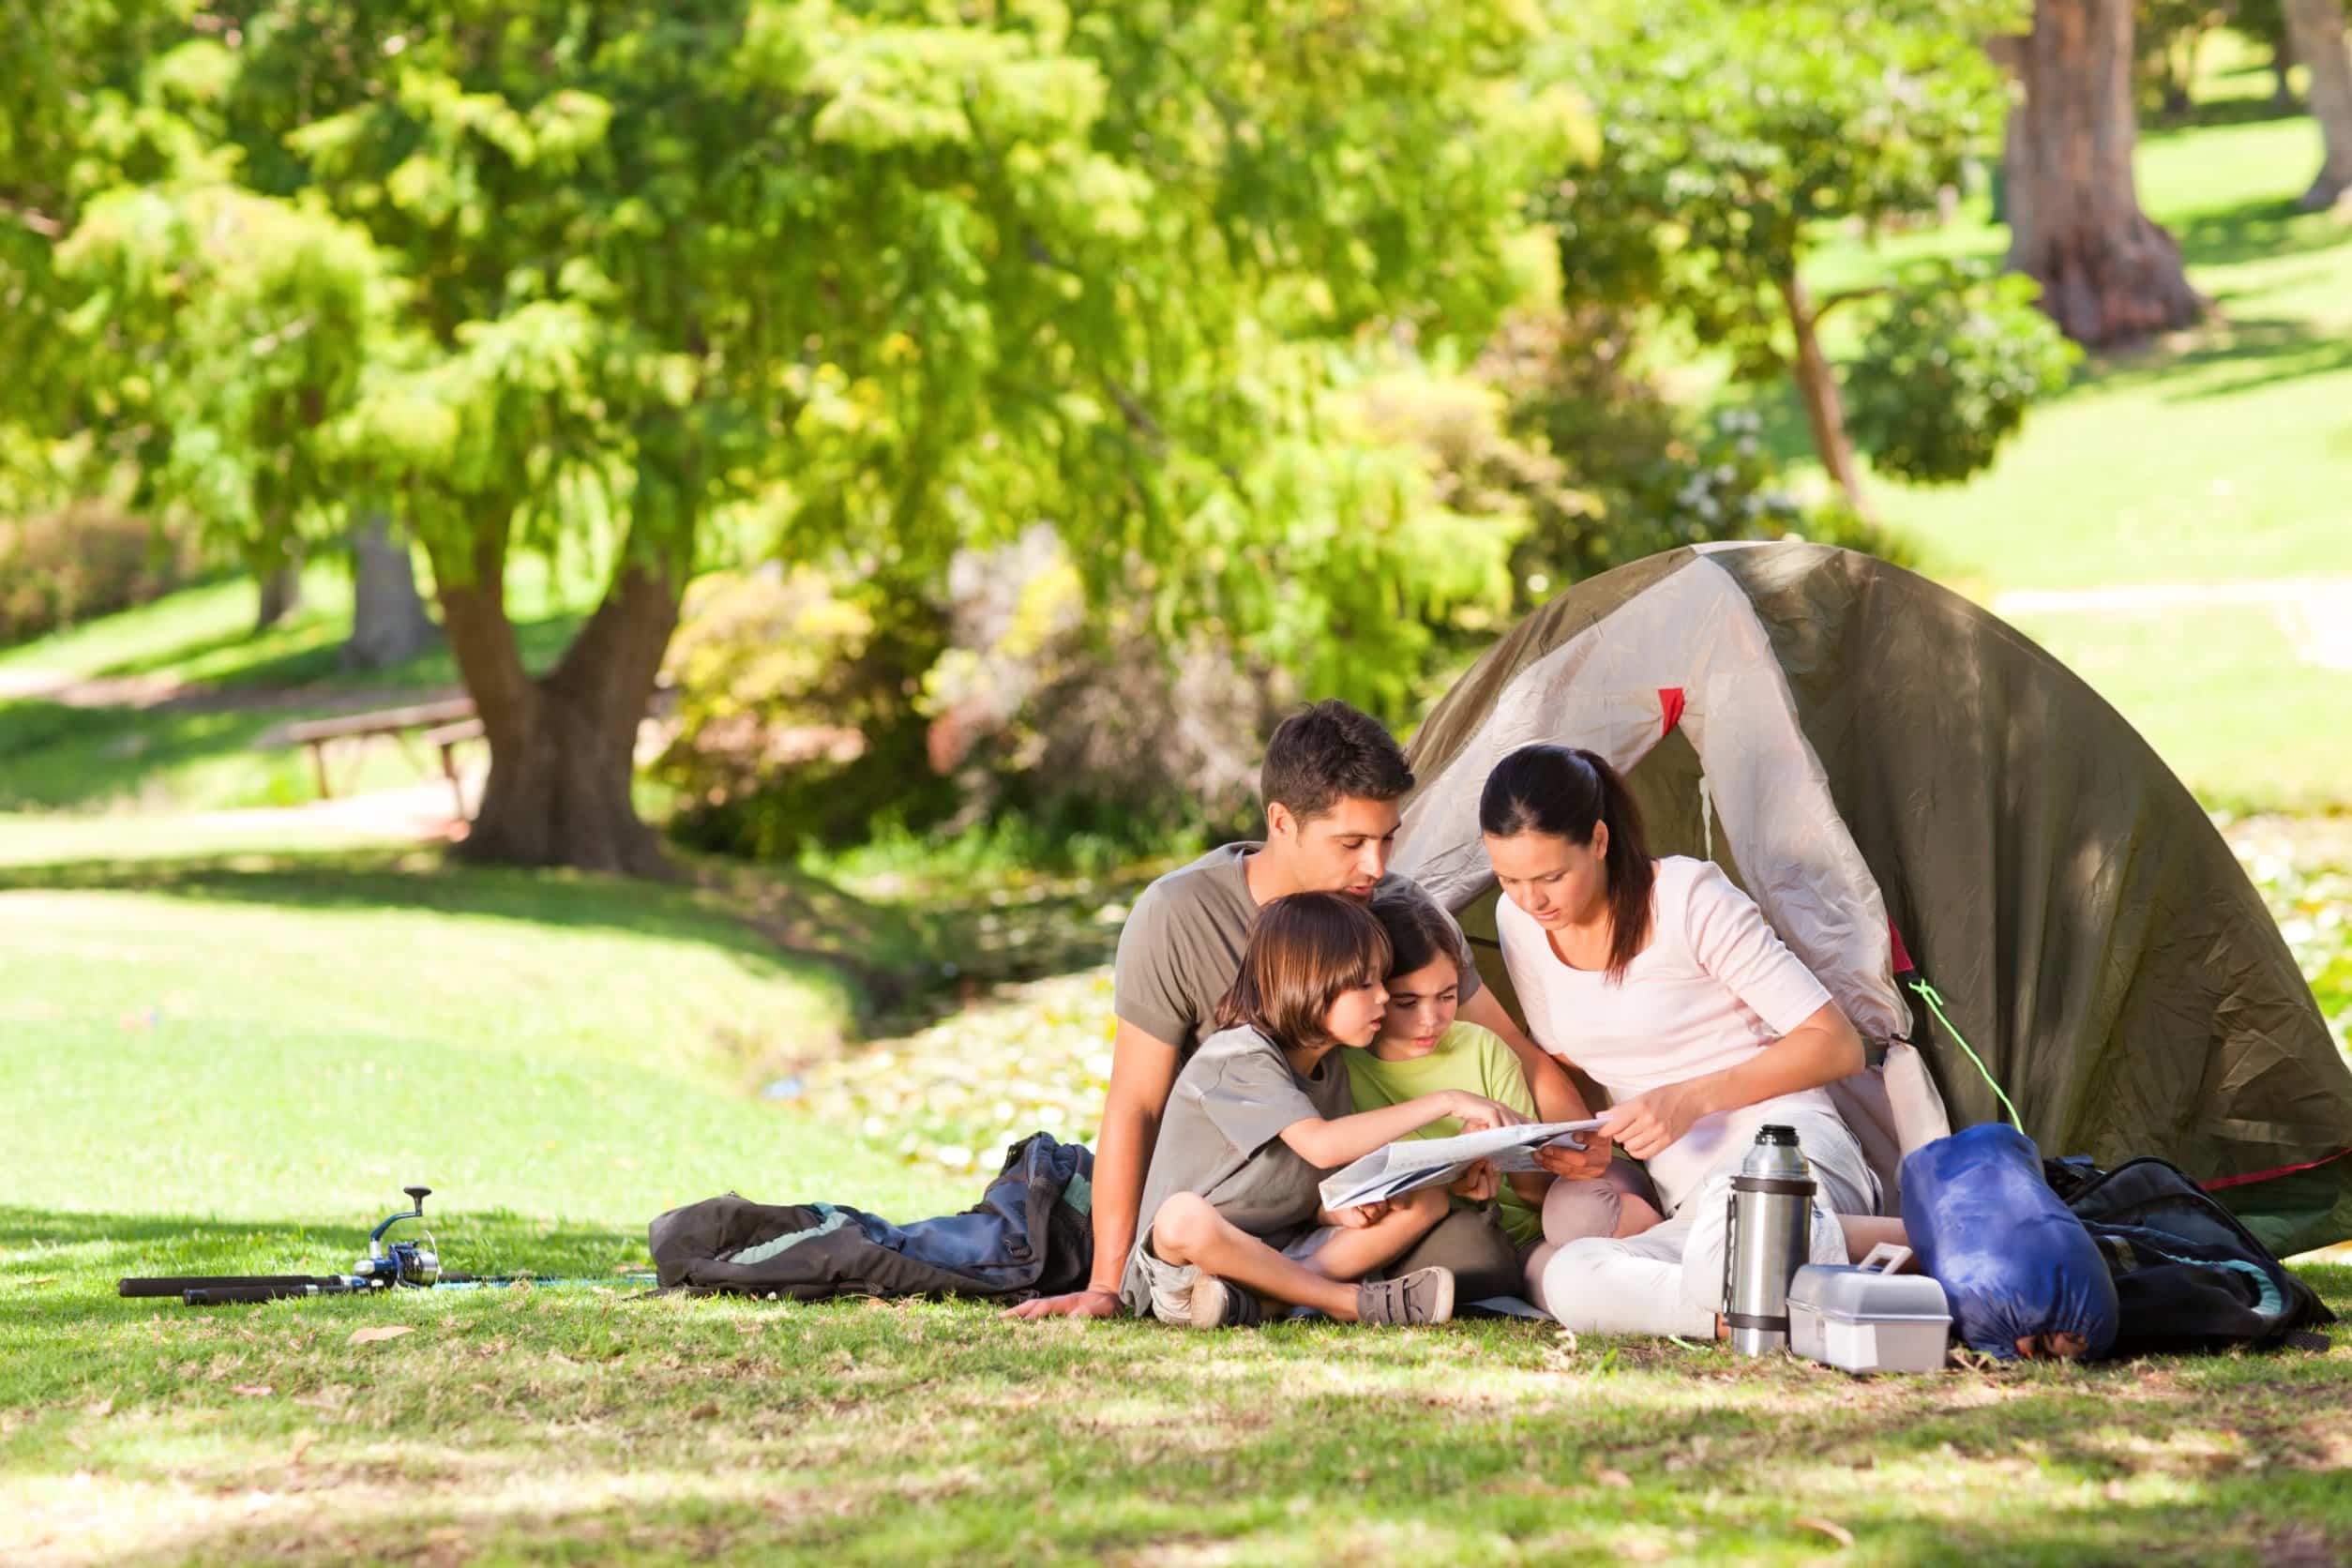 Comment choisir entre camping et location pour vos vacances ?